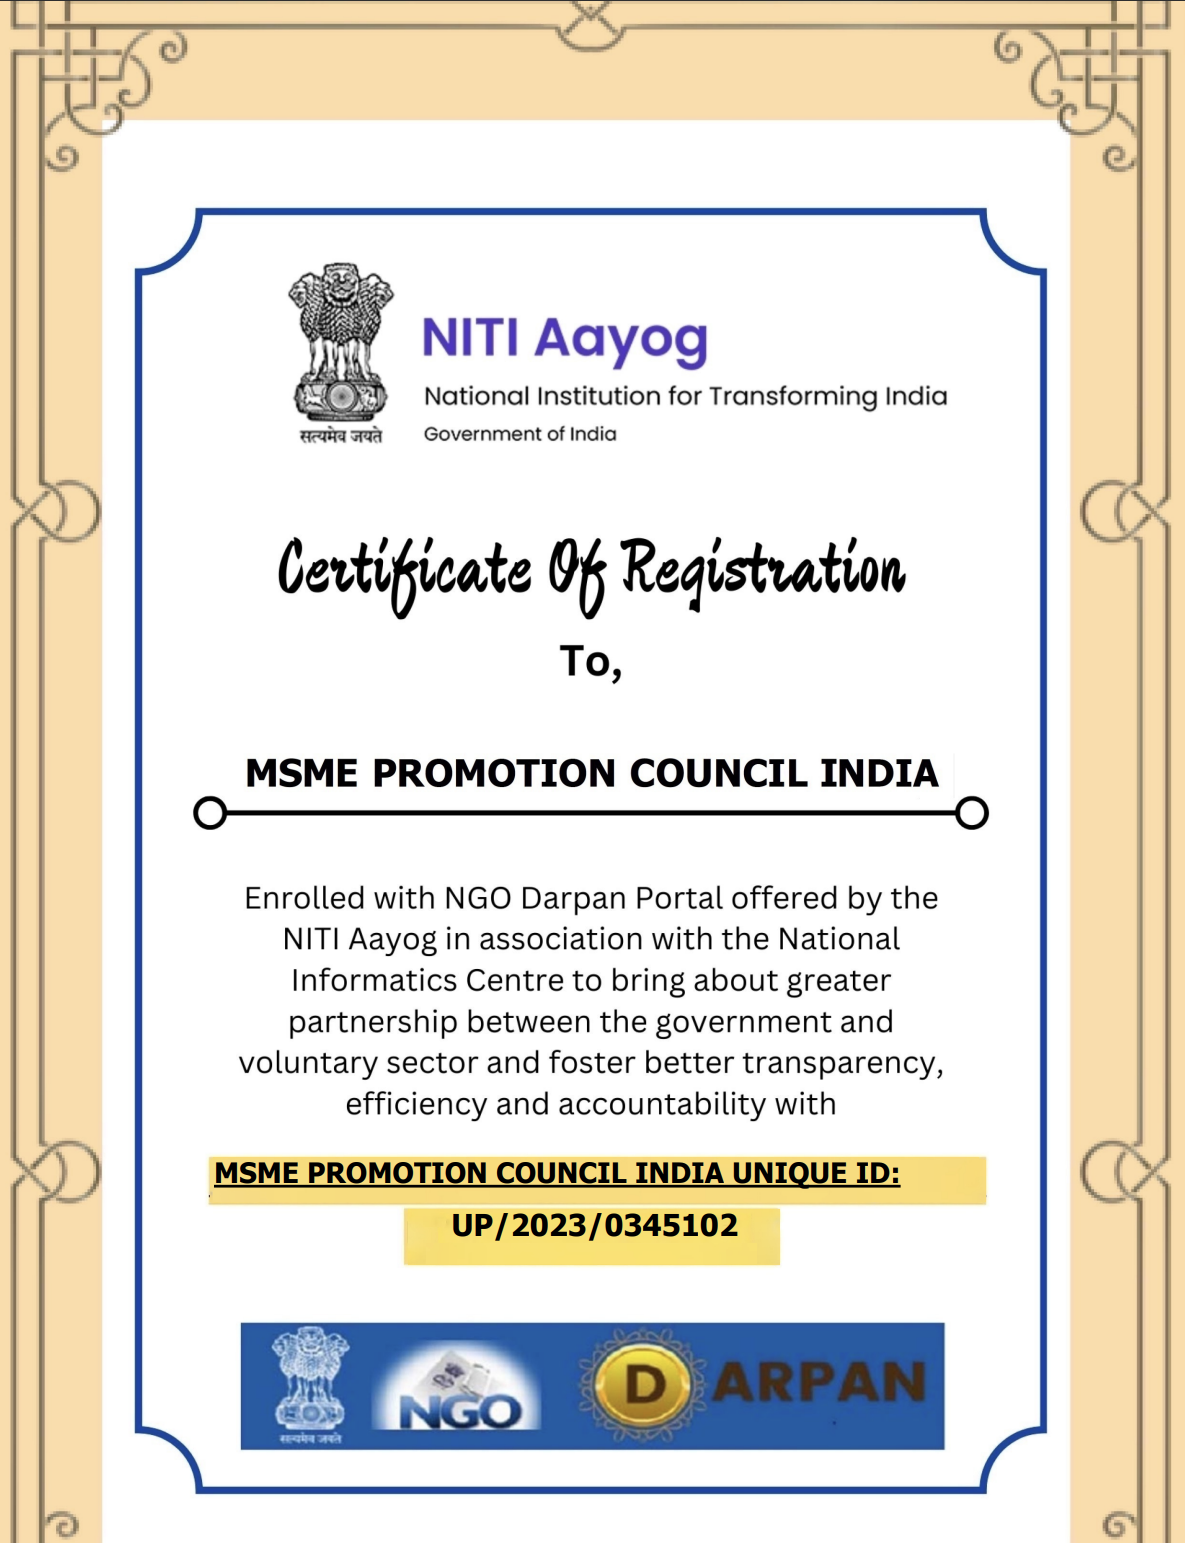 Rajasthan Certificate NGO